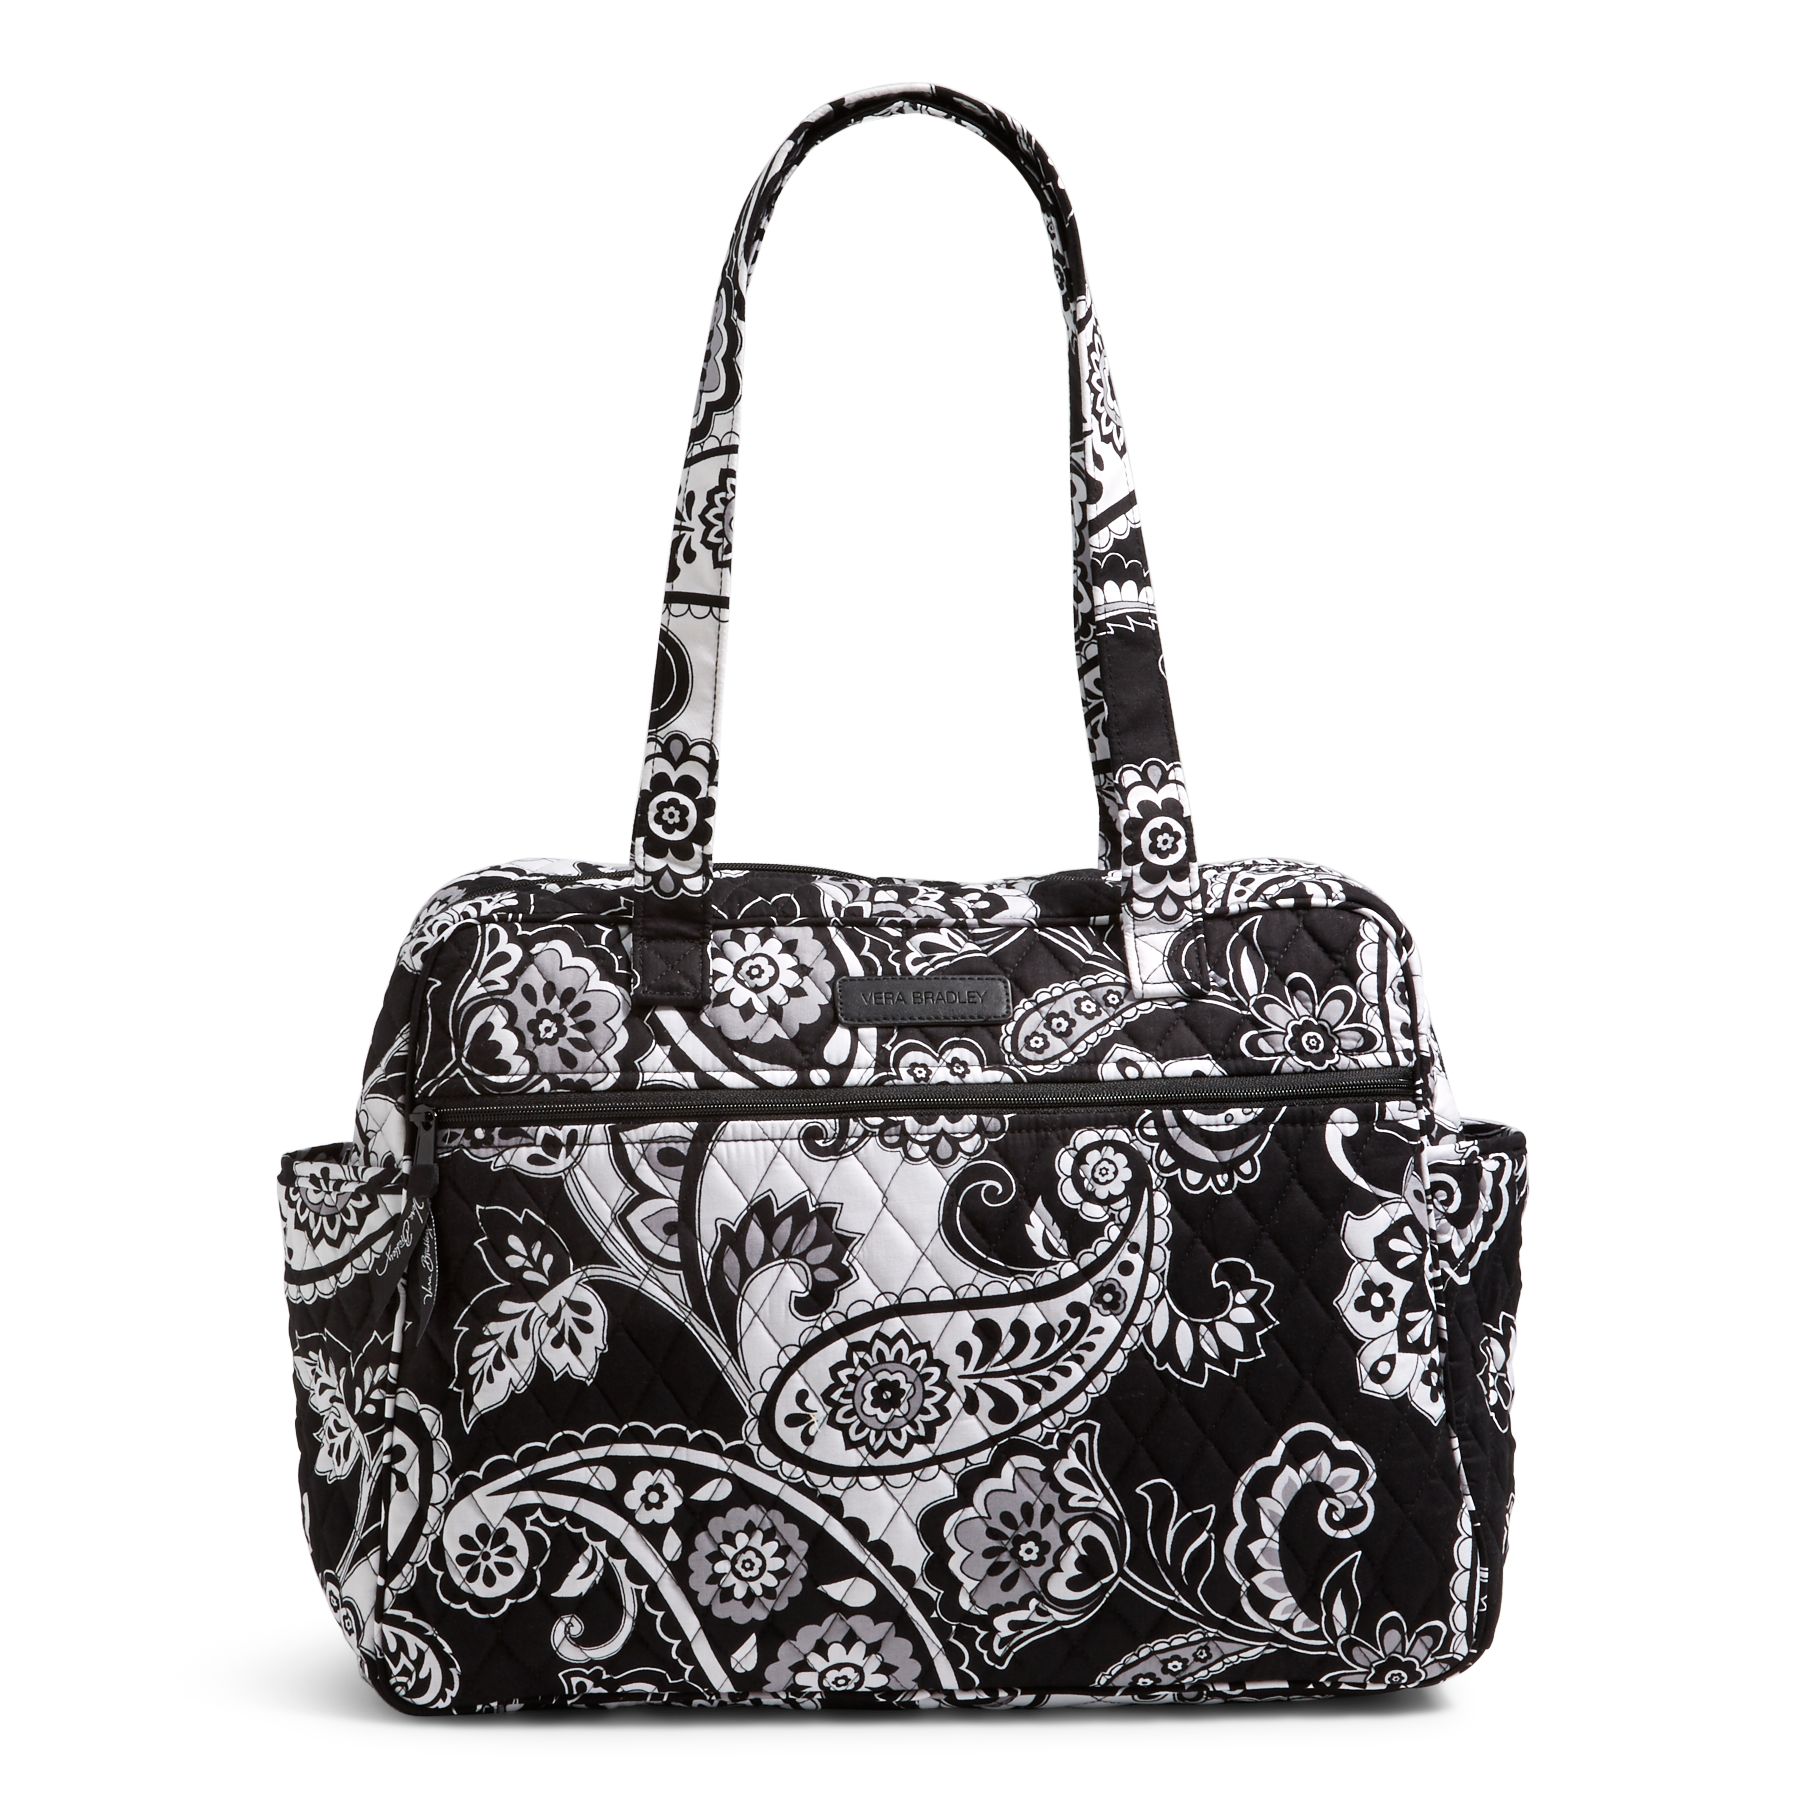 Vera Bradley Factory Exclusive Baby Bag | eBay